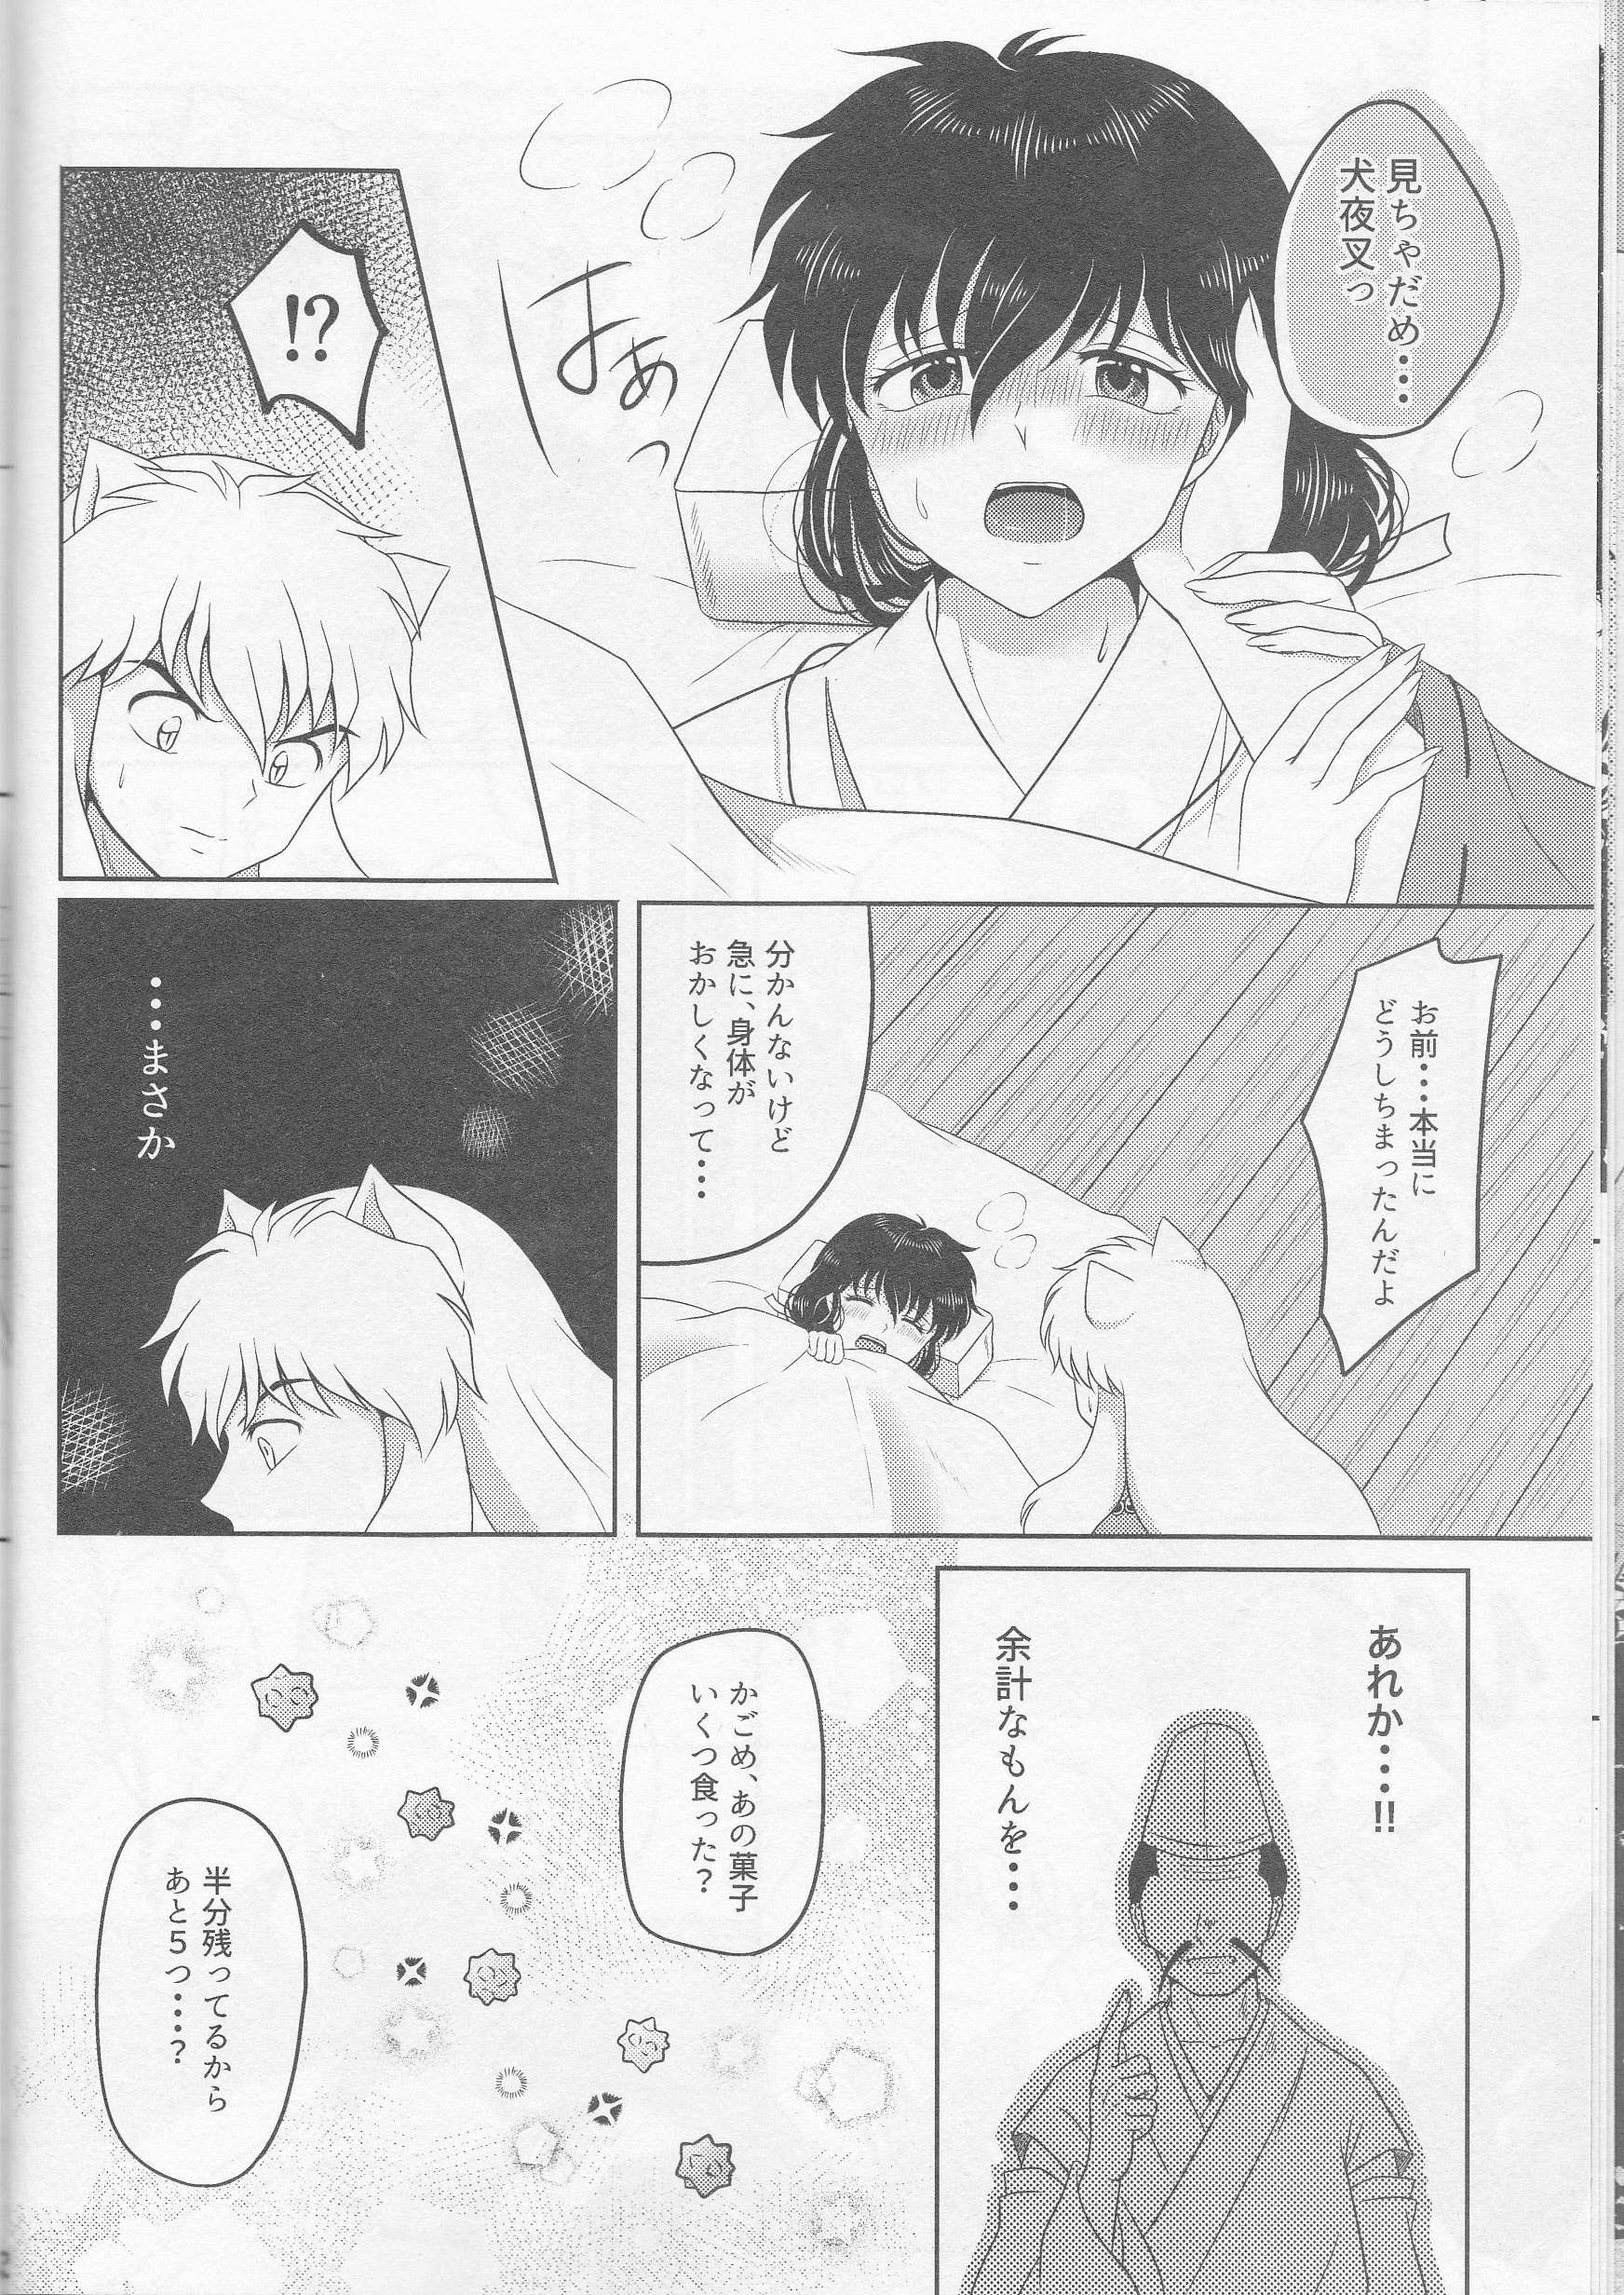 Koi Gusuri - Love drug hentai manga picture 9